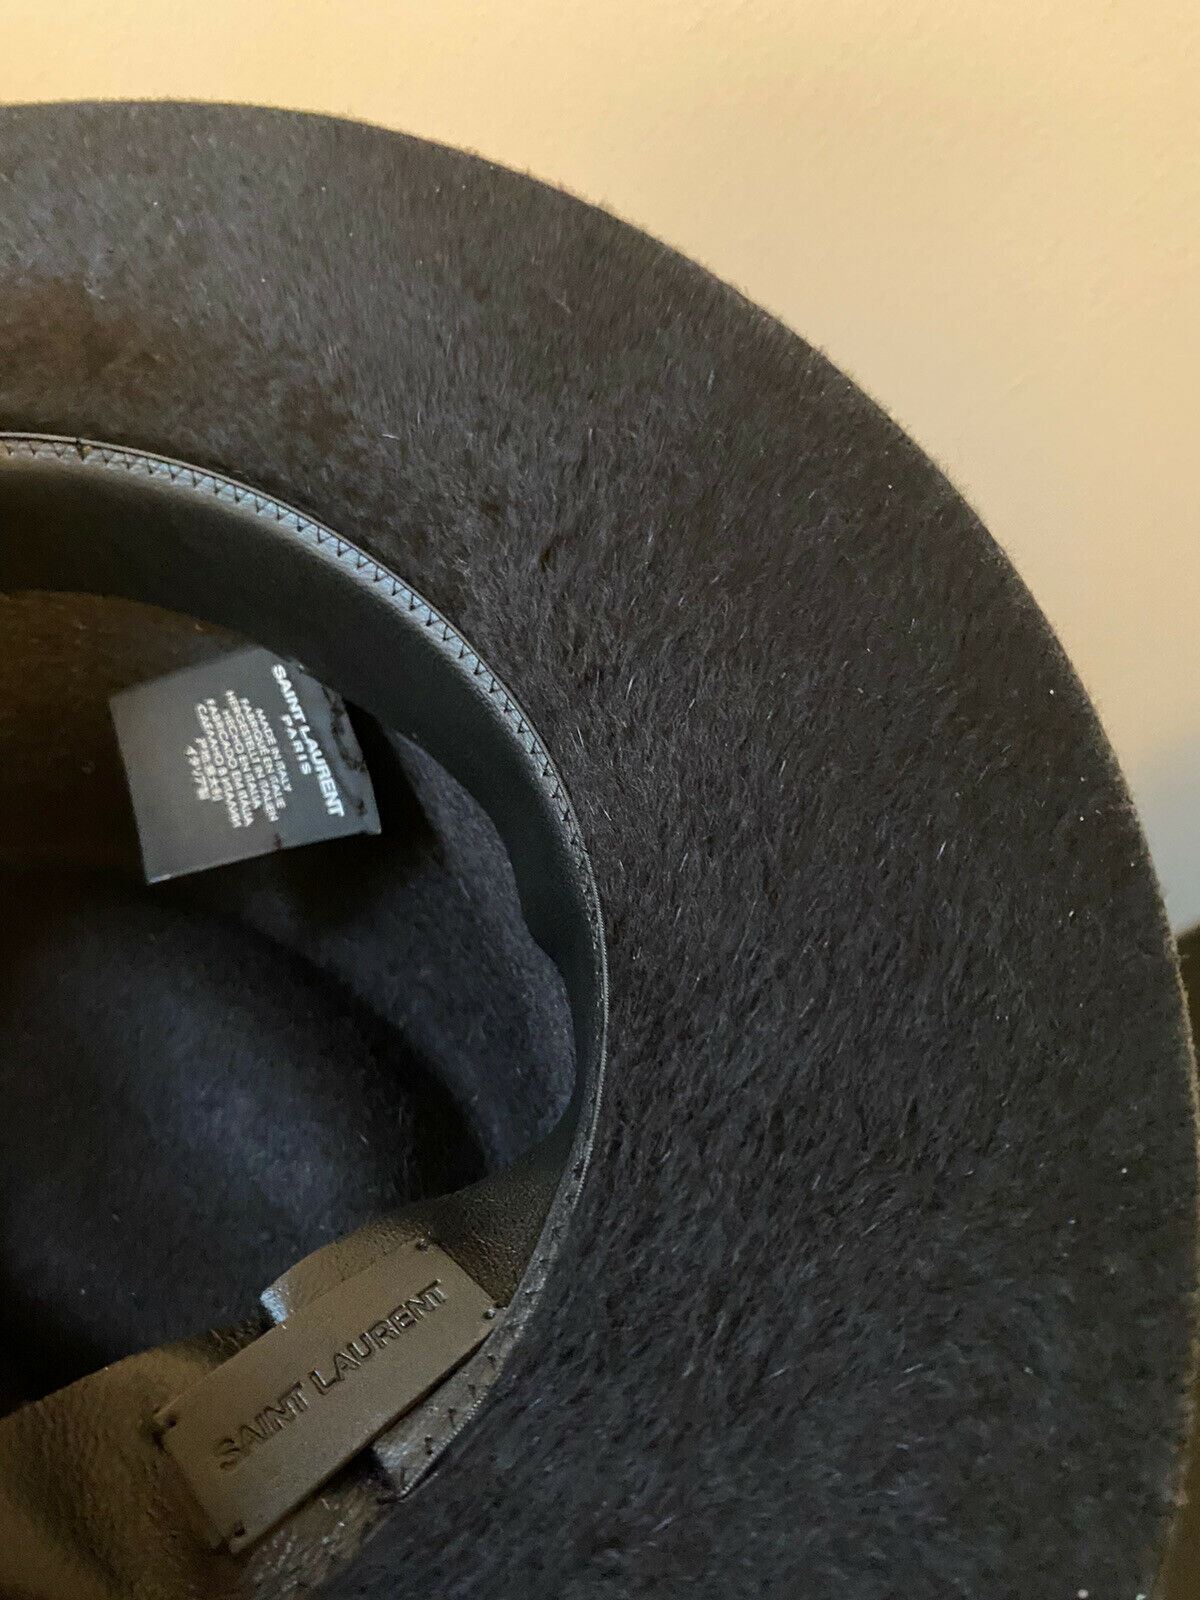 Neu mit Etikett: 995 $ Saint Laurent Herren-Fedora-Hut aus zotteligem Filz, Schwarz, Größe L, Italien